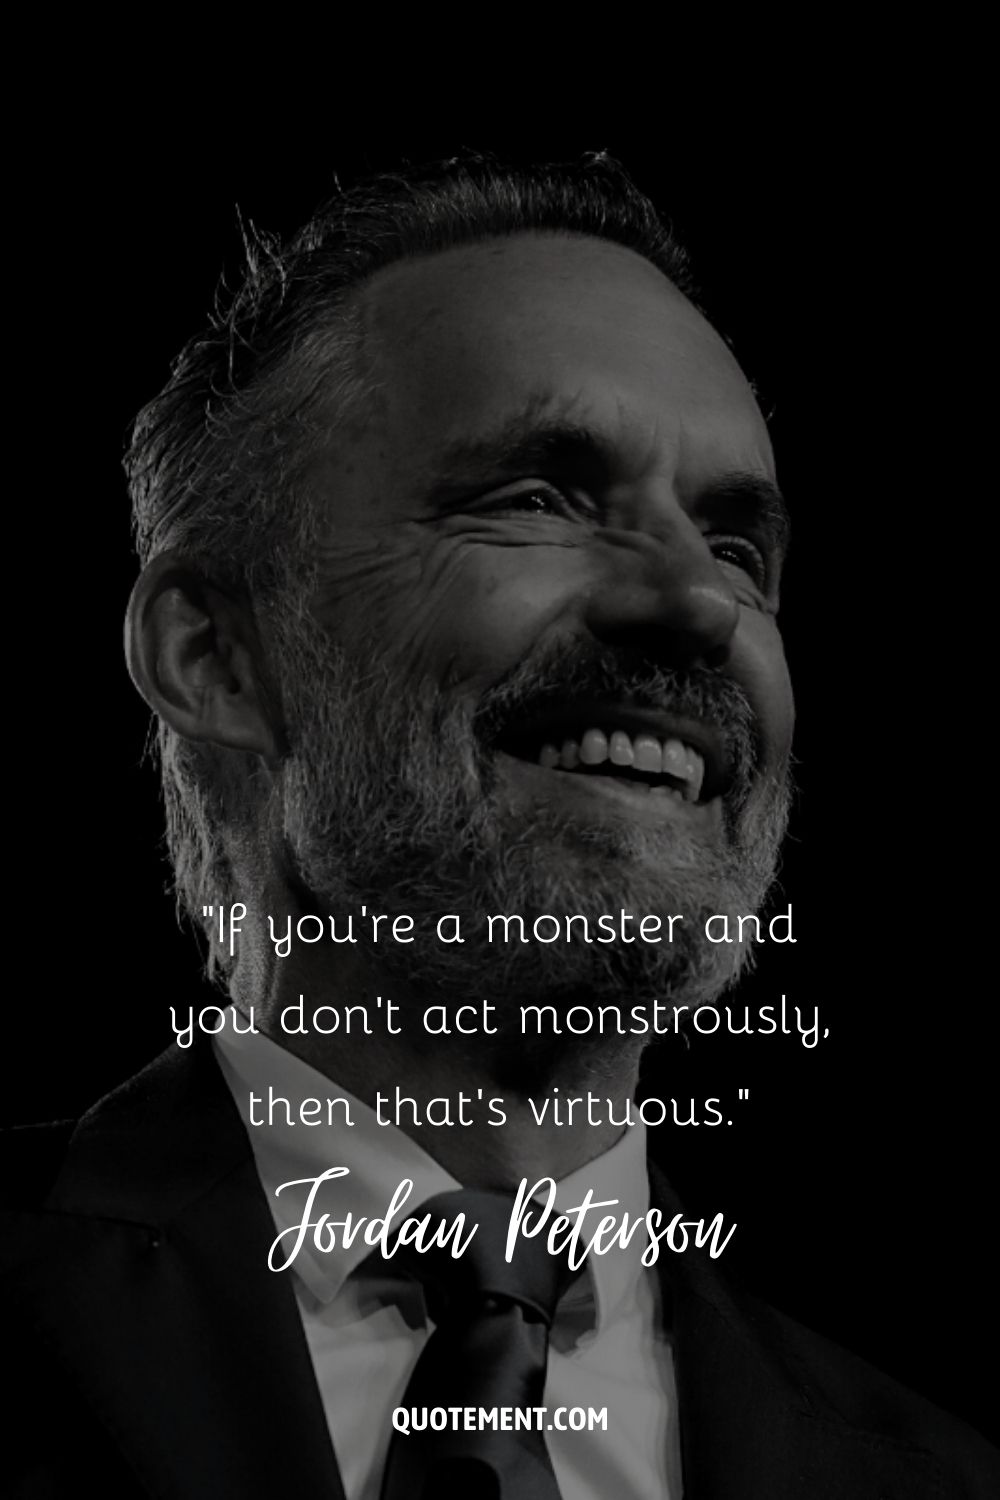 Si eres un monstruo y no actúas monstruosamente, entonces eso es virtuoso.